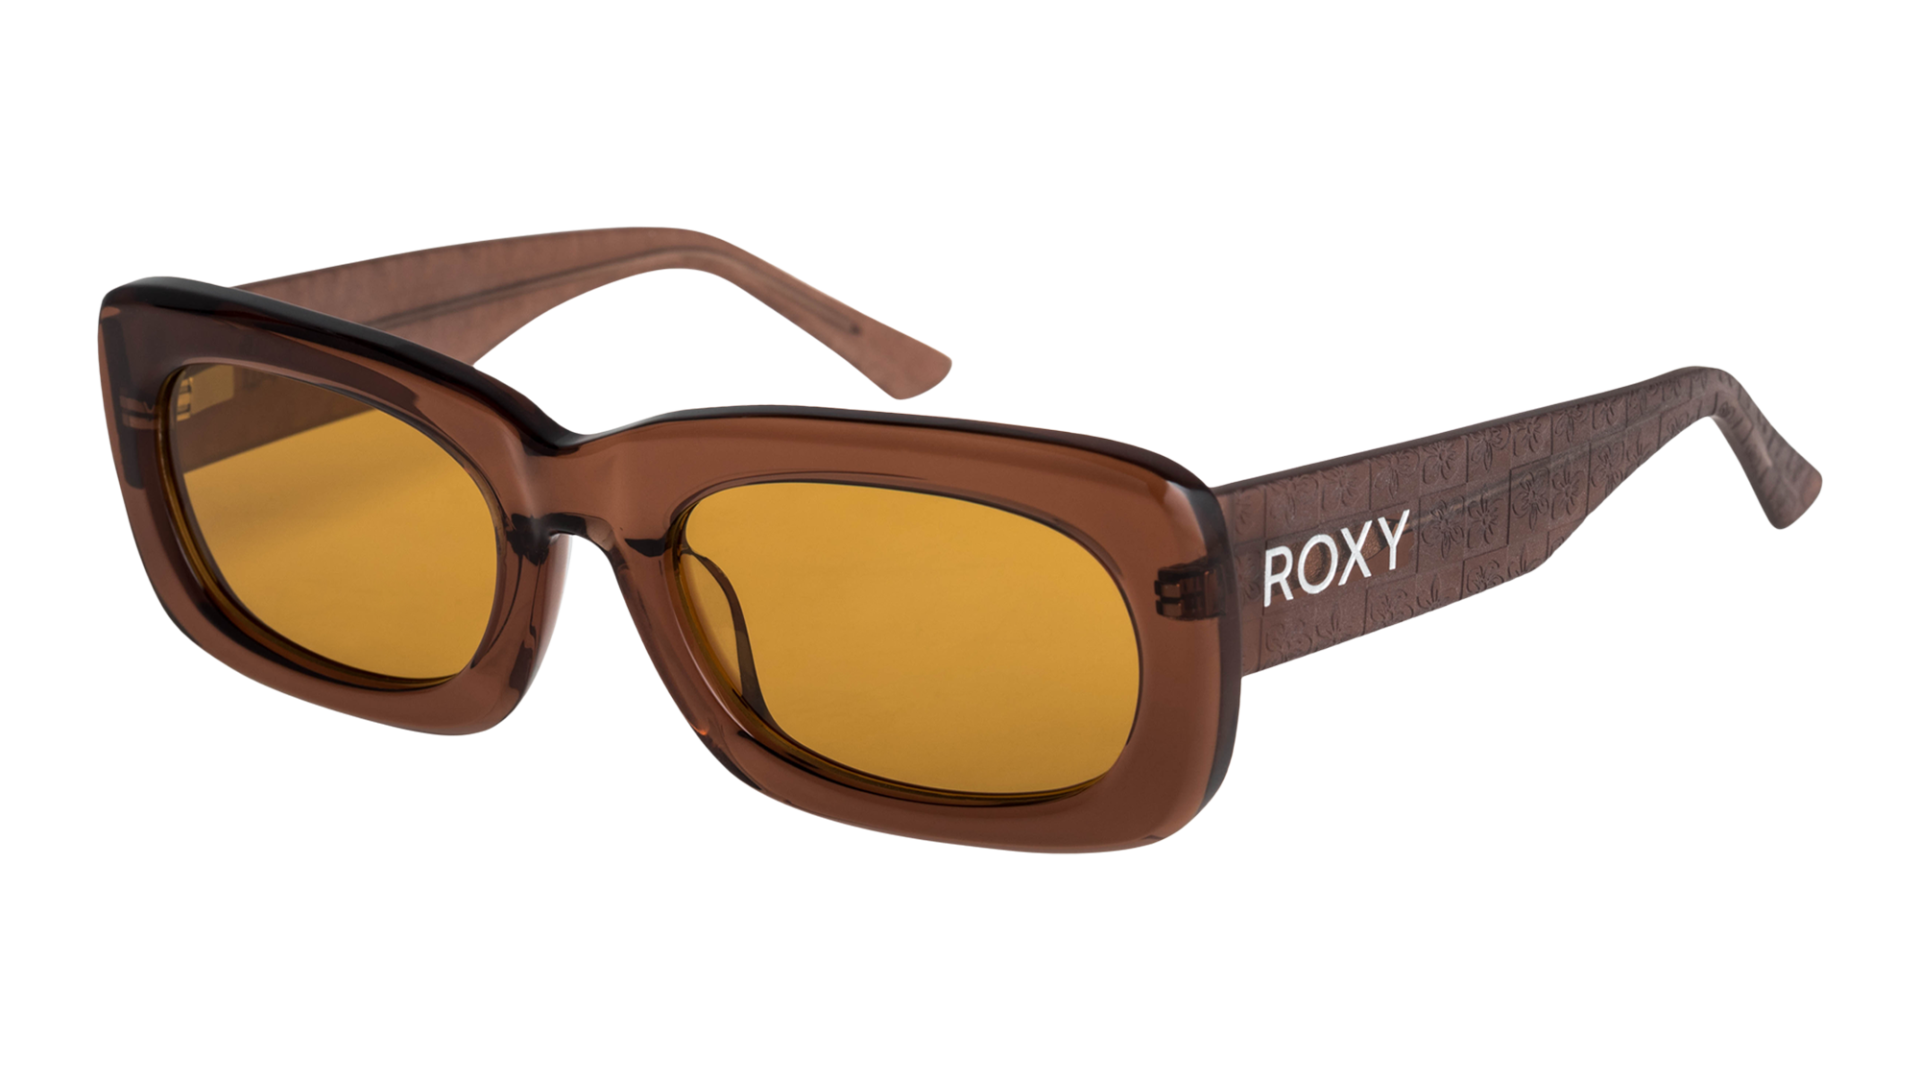 Roxy 2023 Sunglasses Preview - Boardsport SOURCE